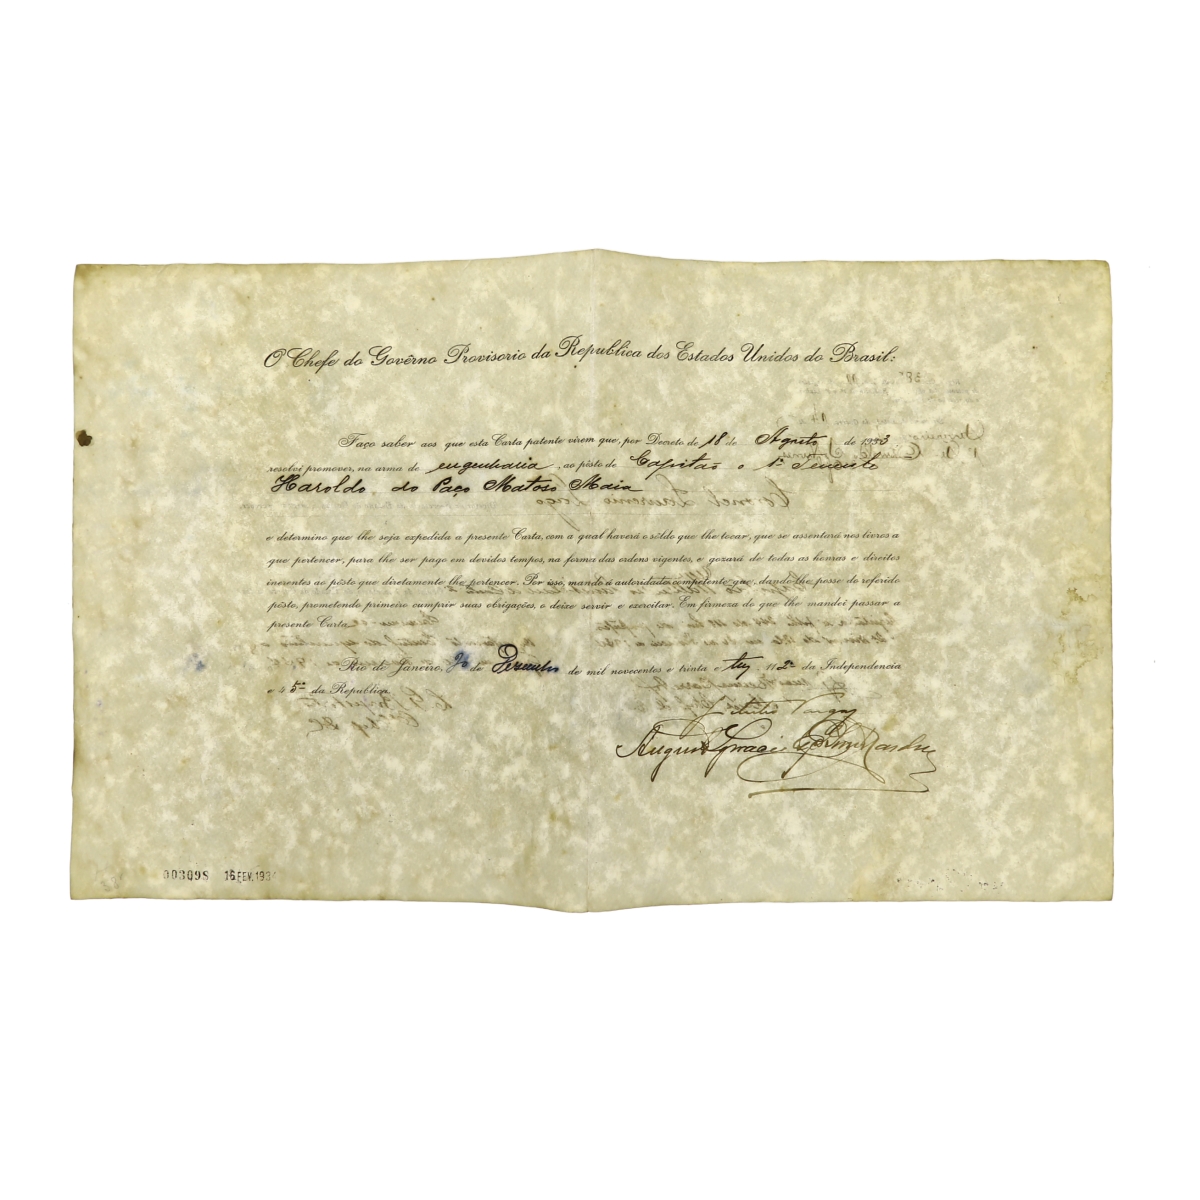 GETULIO VARGAS Carta patente assinada pelo então Pres